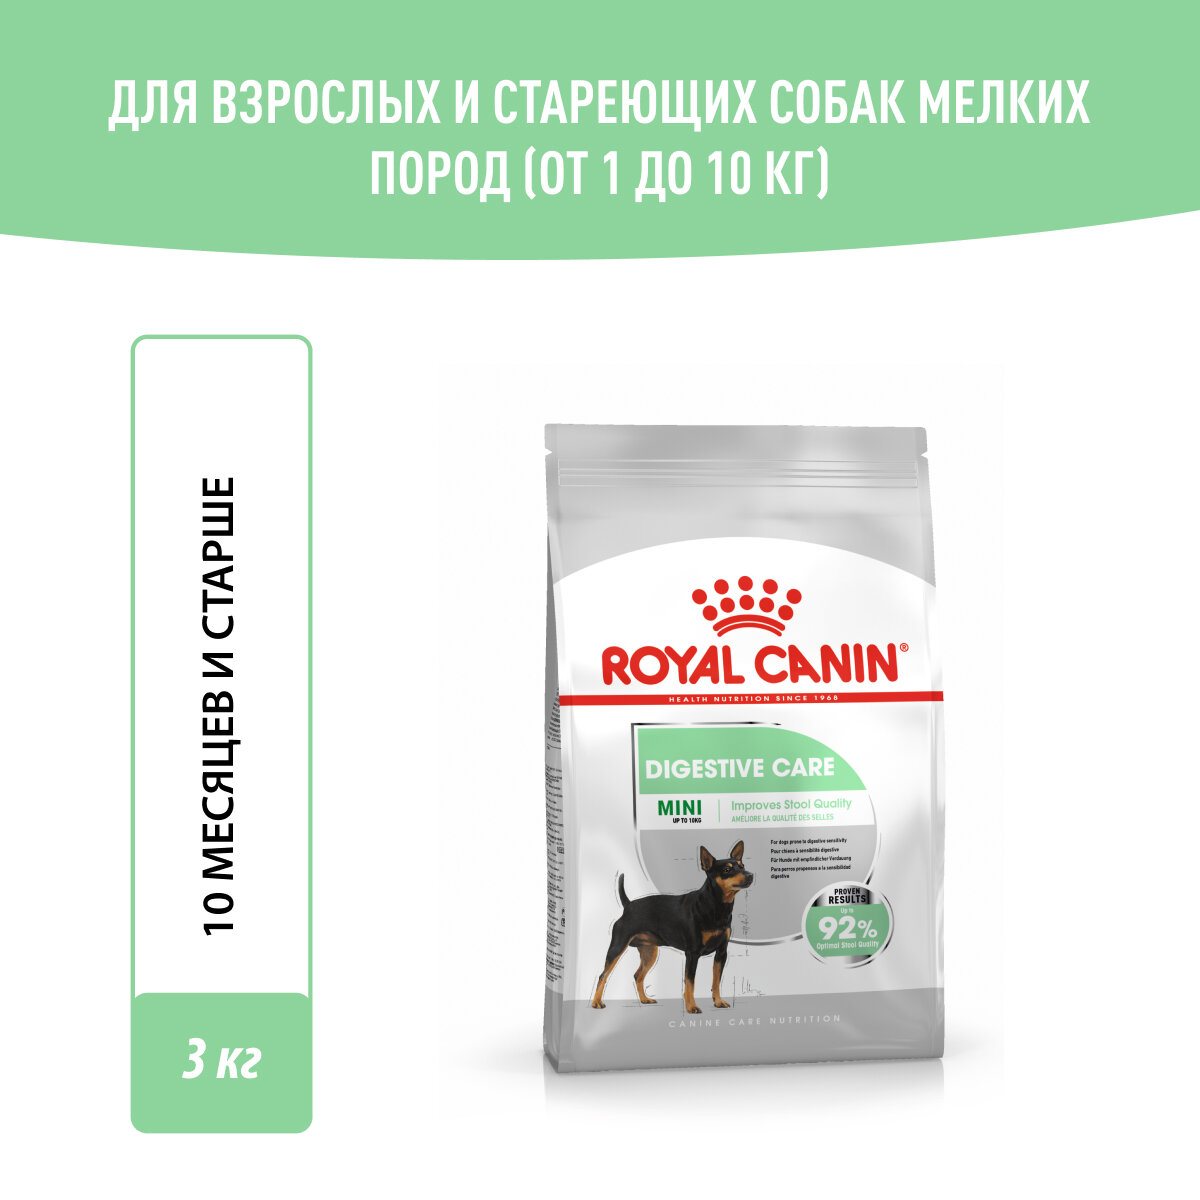 Royal Canin RC Для собак малых пород- забота о пищеварении (Mini Digestive Care) 24470300R0 3 кг 36436